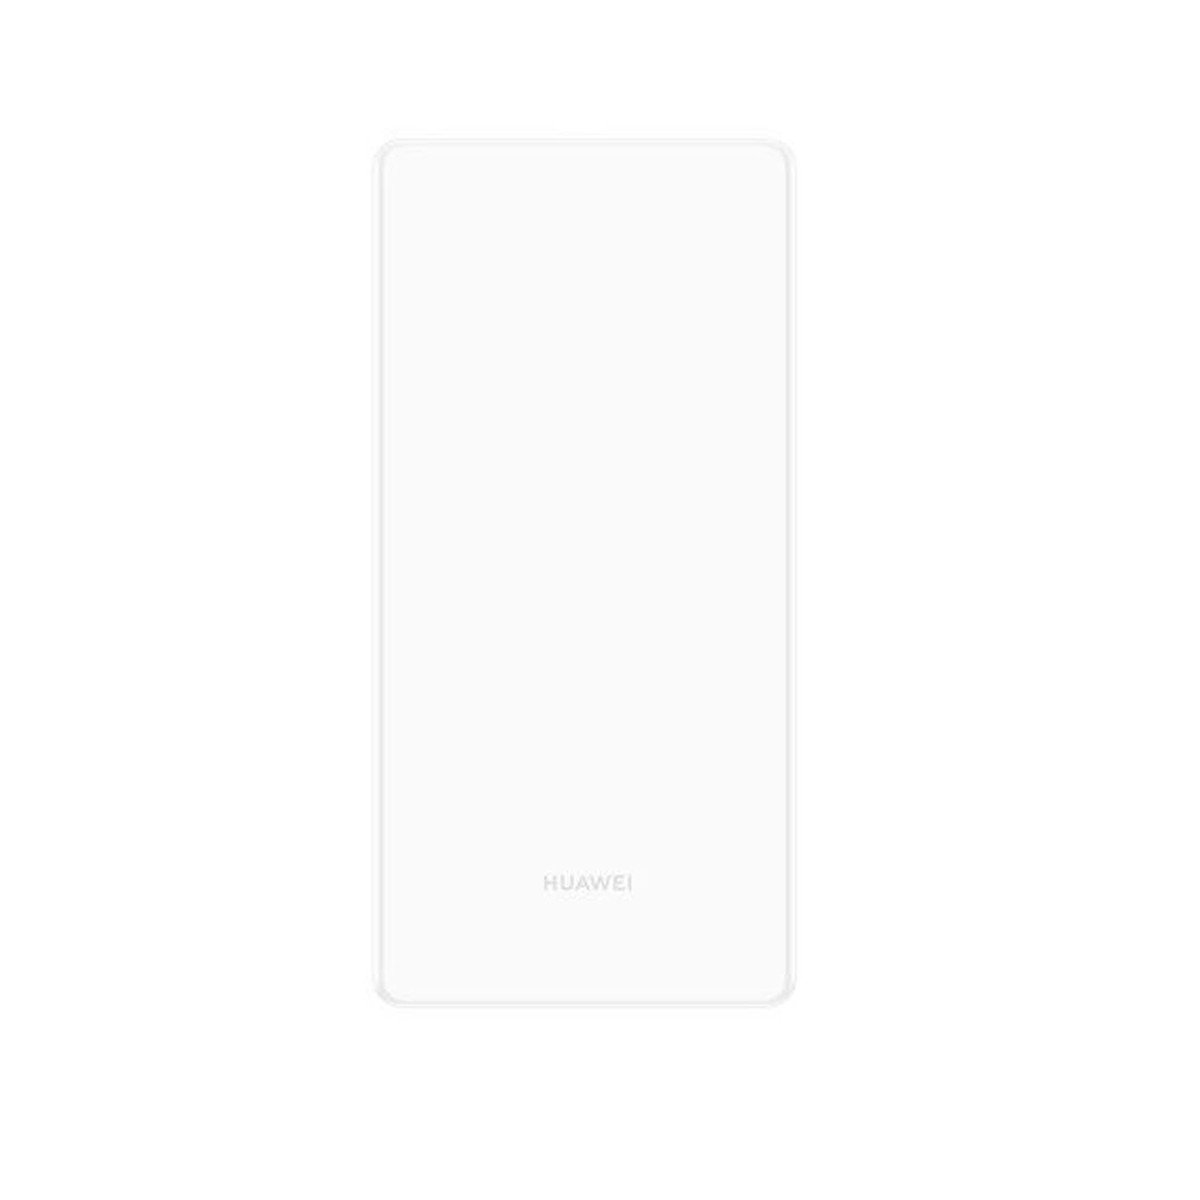 Huawei 5G Portable Router Pro E6878-370,White